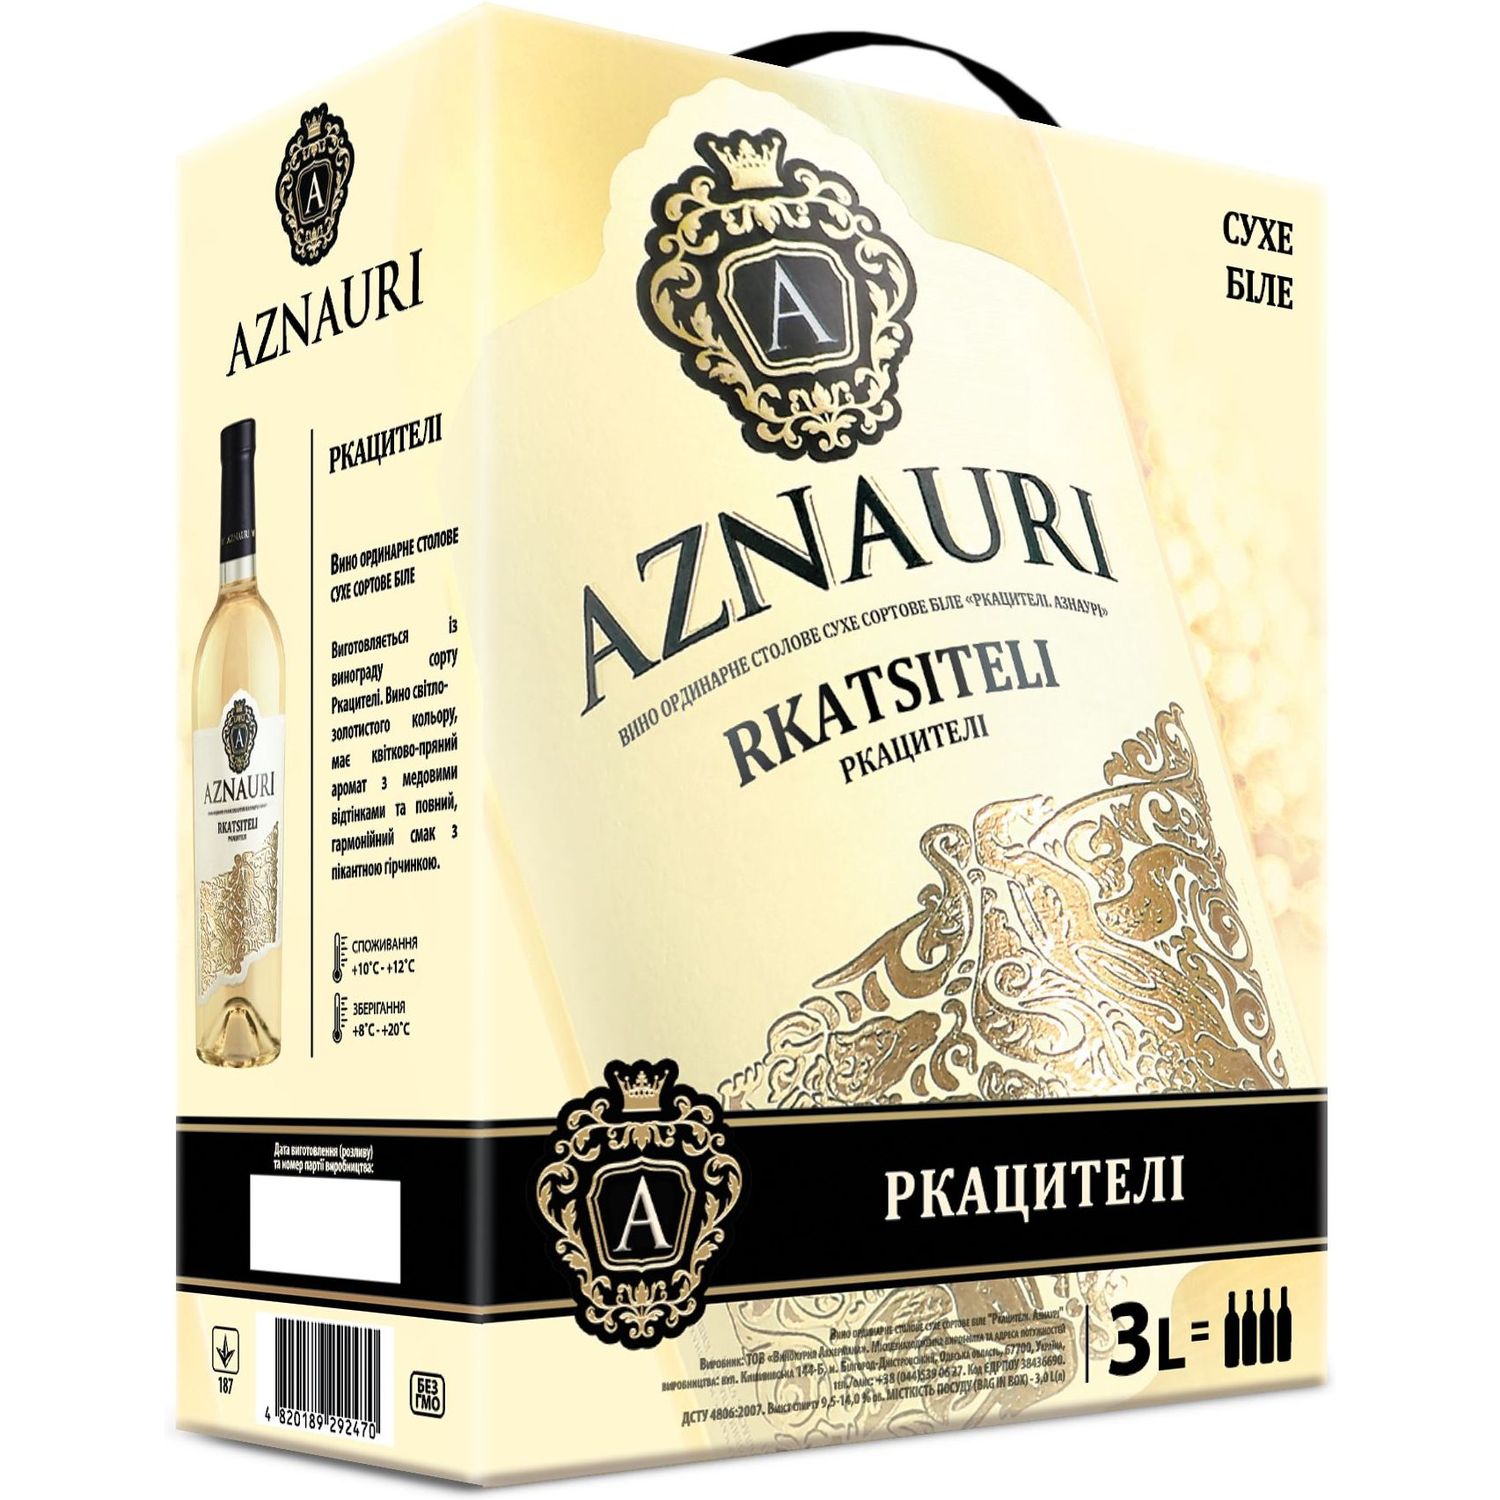 Вино Aznauri Rkatsiteli, белое, сухое, 3 л - фото 1